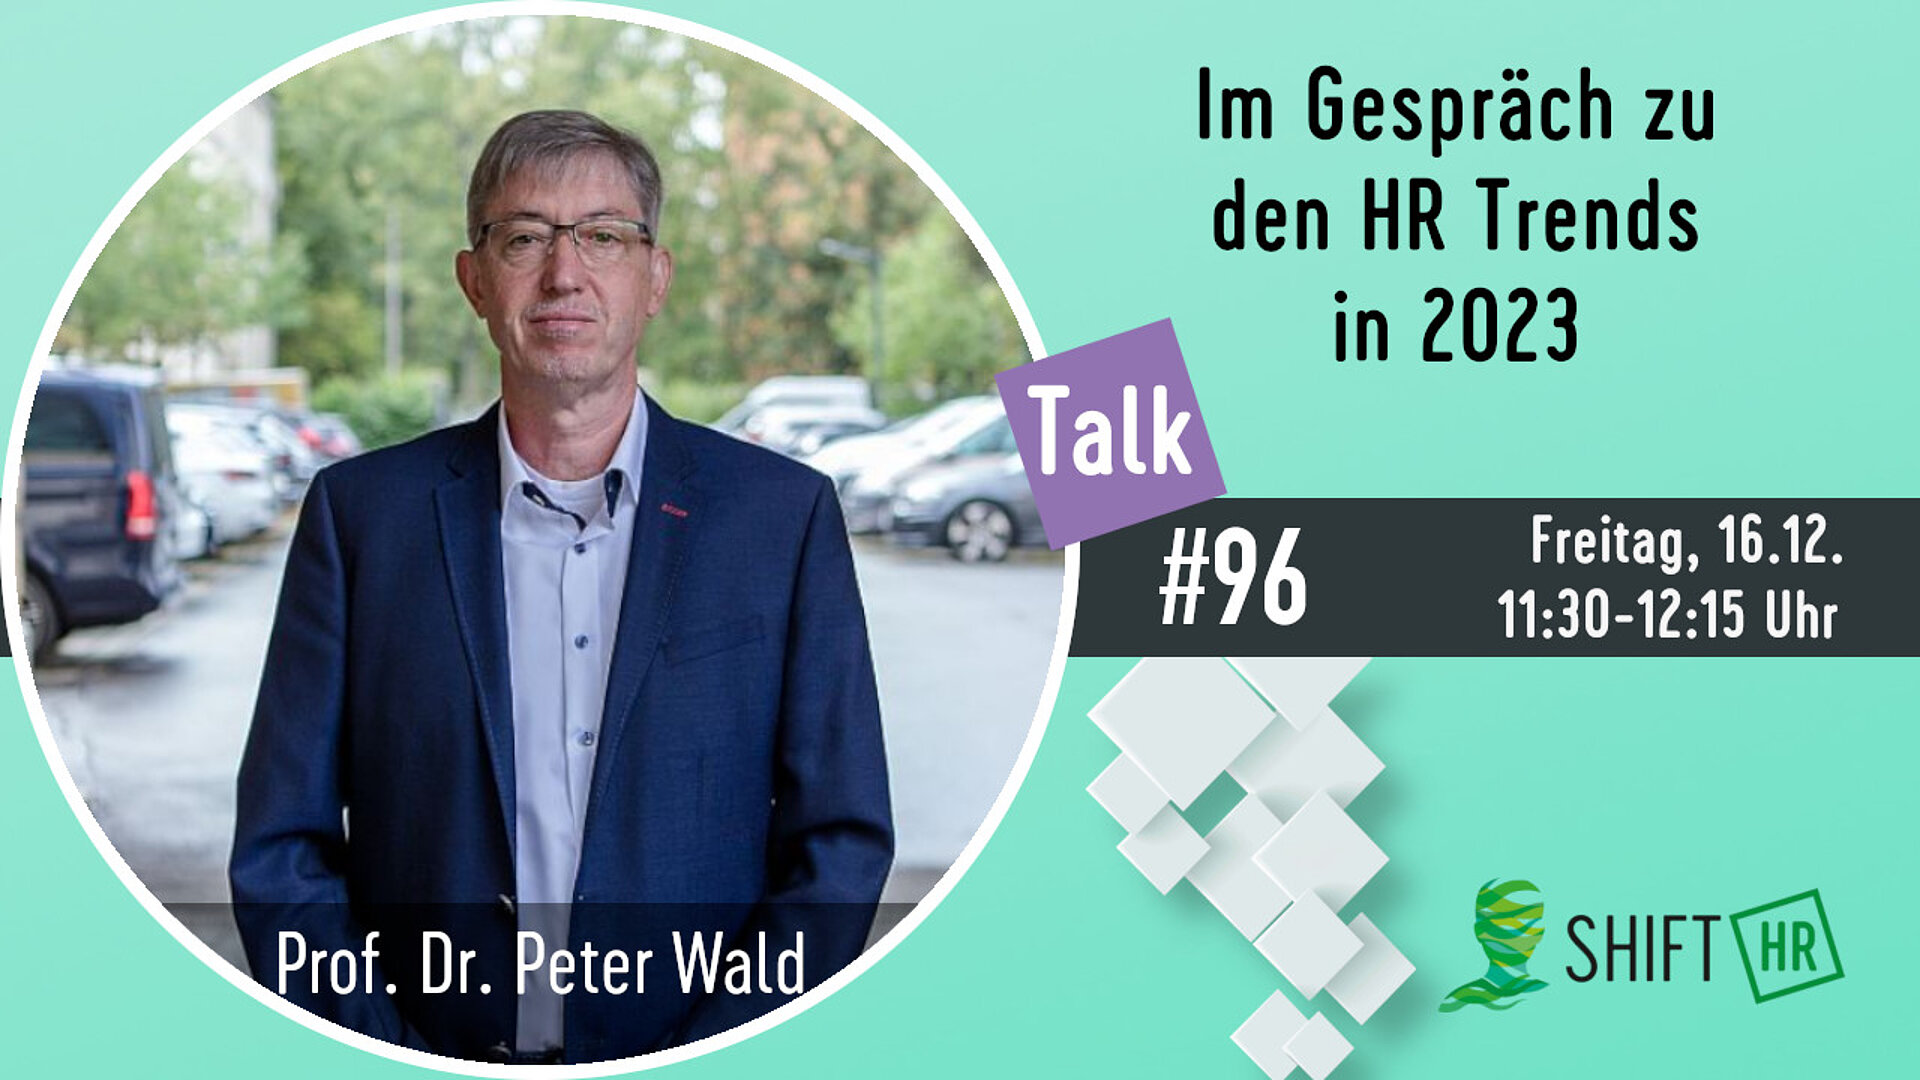 Im Gespräch mit Prof. Dr. Peter Wald zu den HR Trends zum Jahreswechsel 2022/23